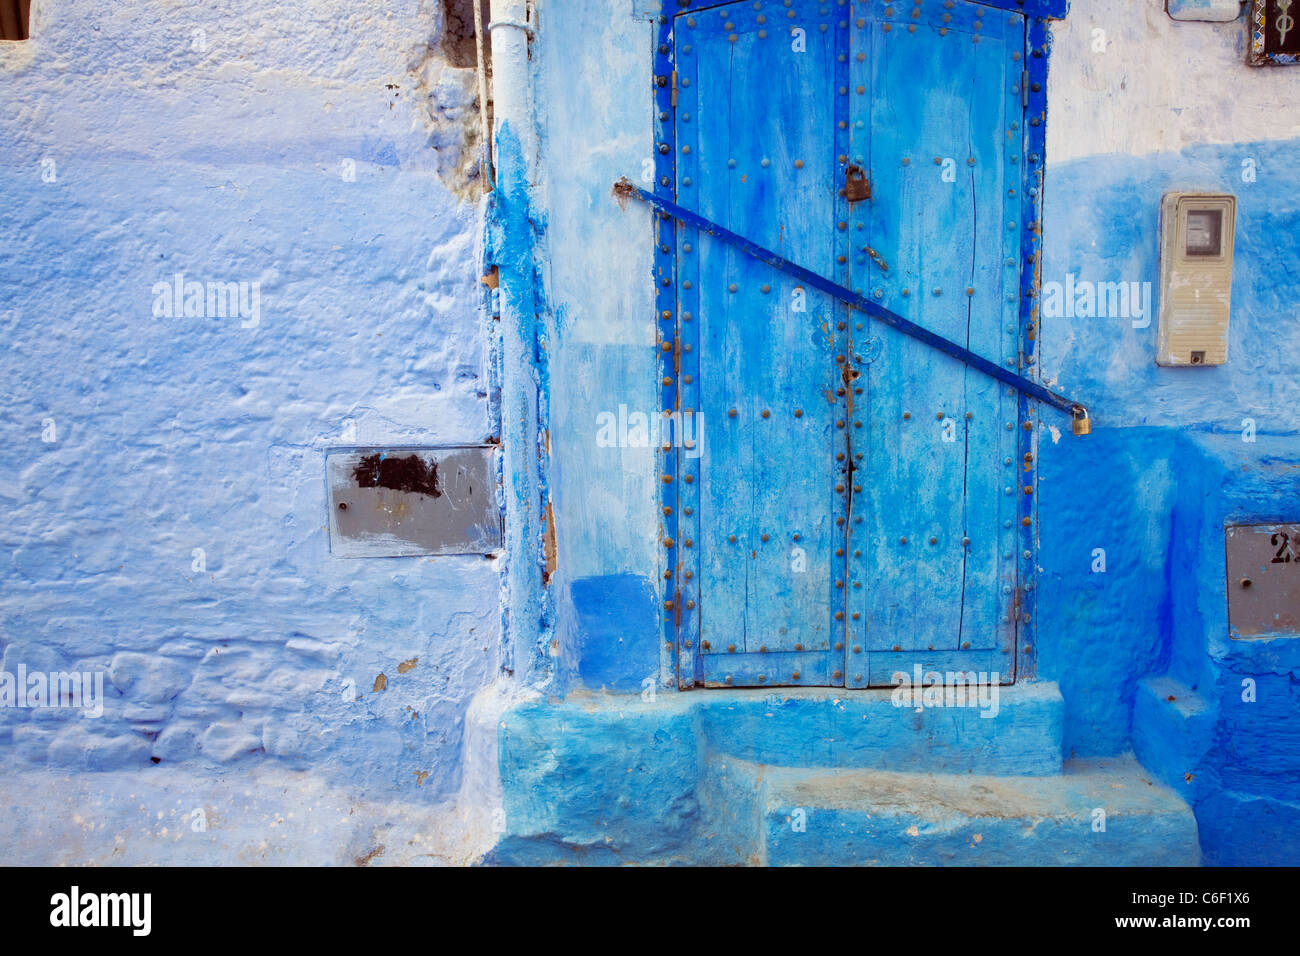 Blaue Häuser und Gassen in Chefchaouen, Marokko Stockfoto